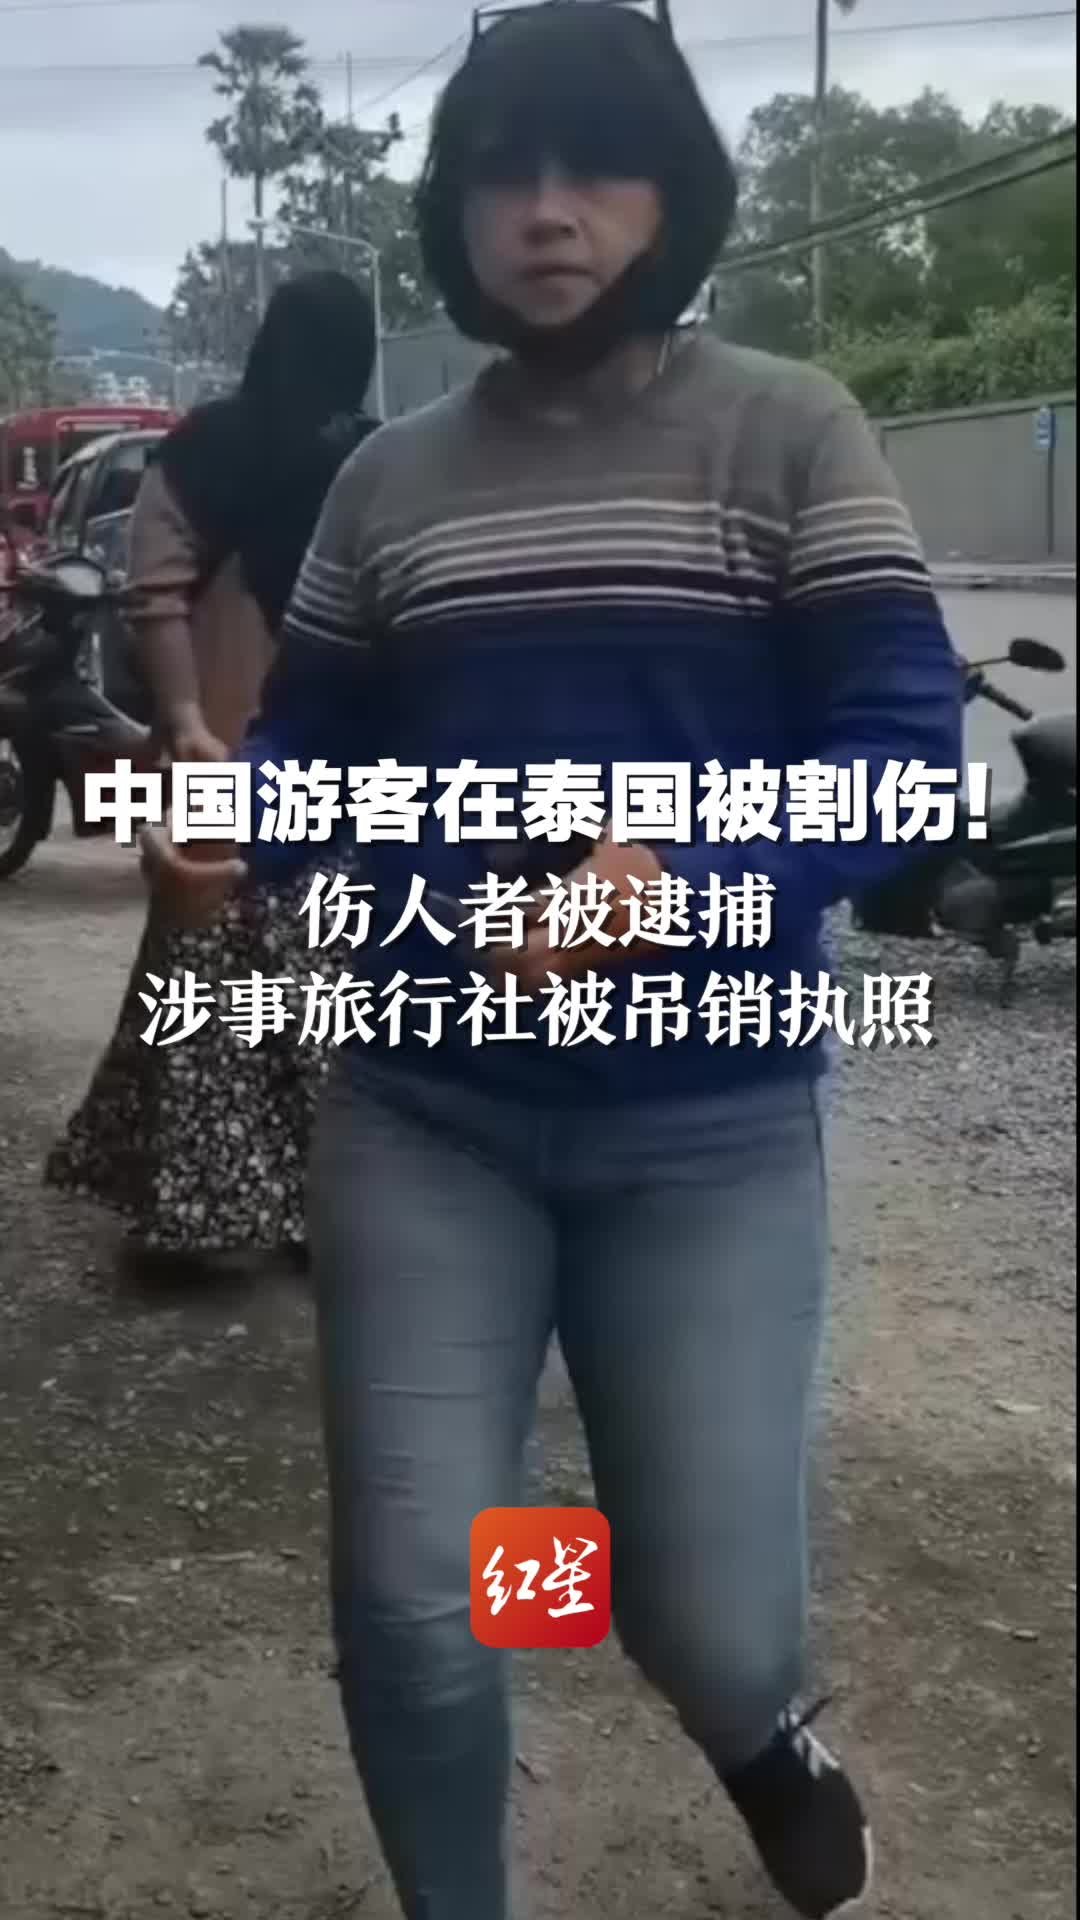 22岁女生在泰国遭绑架虐杀 三嫌犯为中国人 现已逃离泰国_凤凰网视频_凤凰网